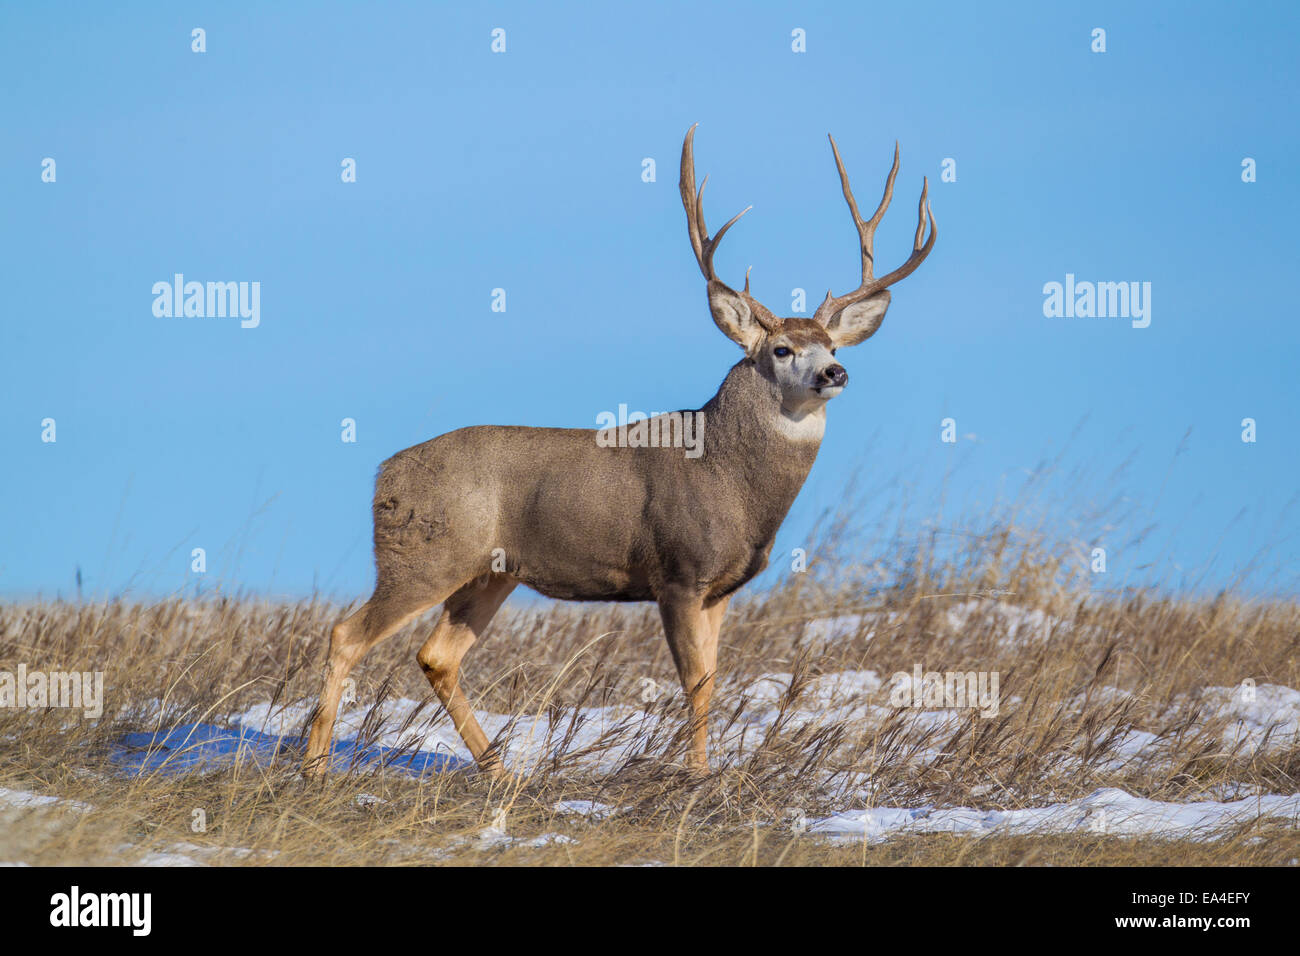 Mule deer buck on the prairies of South Dakota Stock Photo